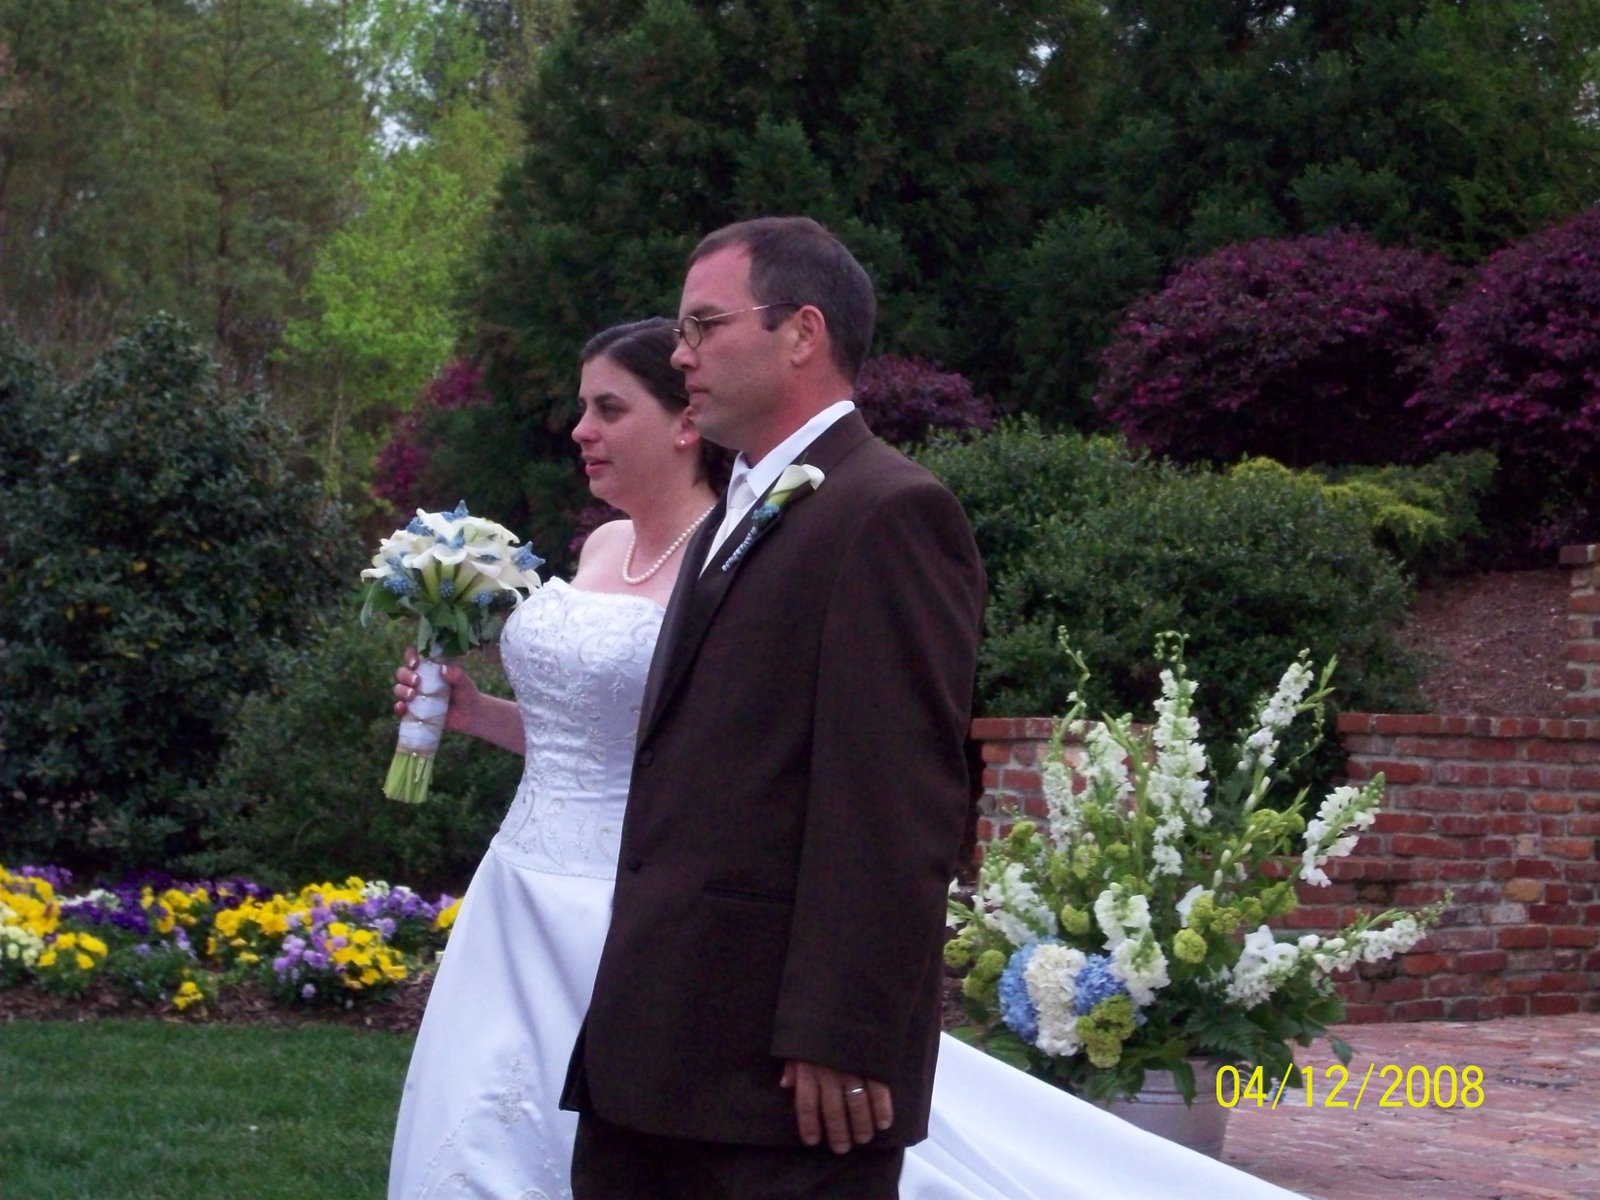 [Chrispin+and+Amy's+Wedding+April+2008+020.jpg]